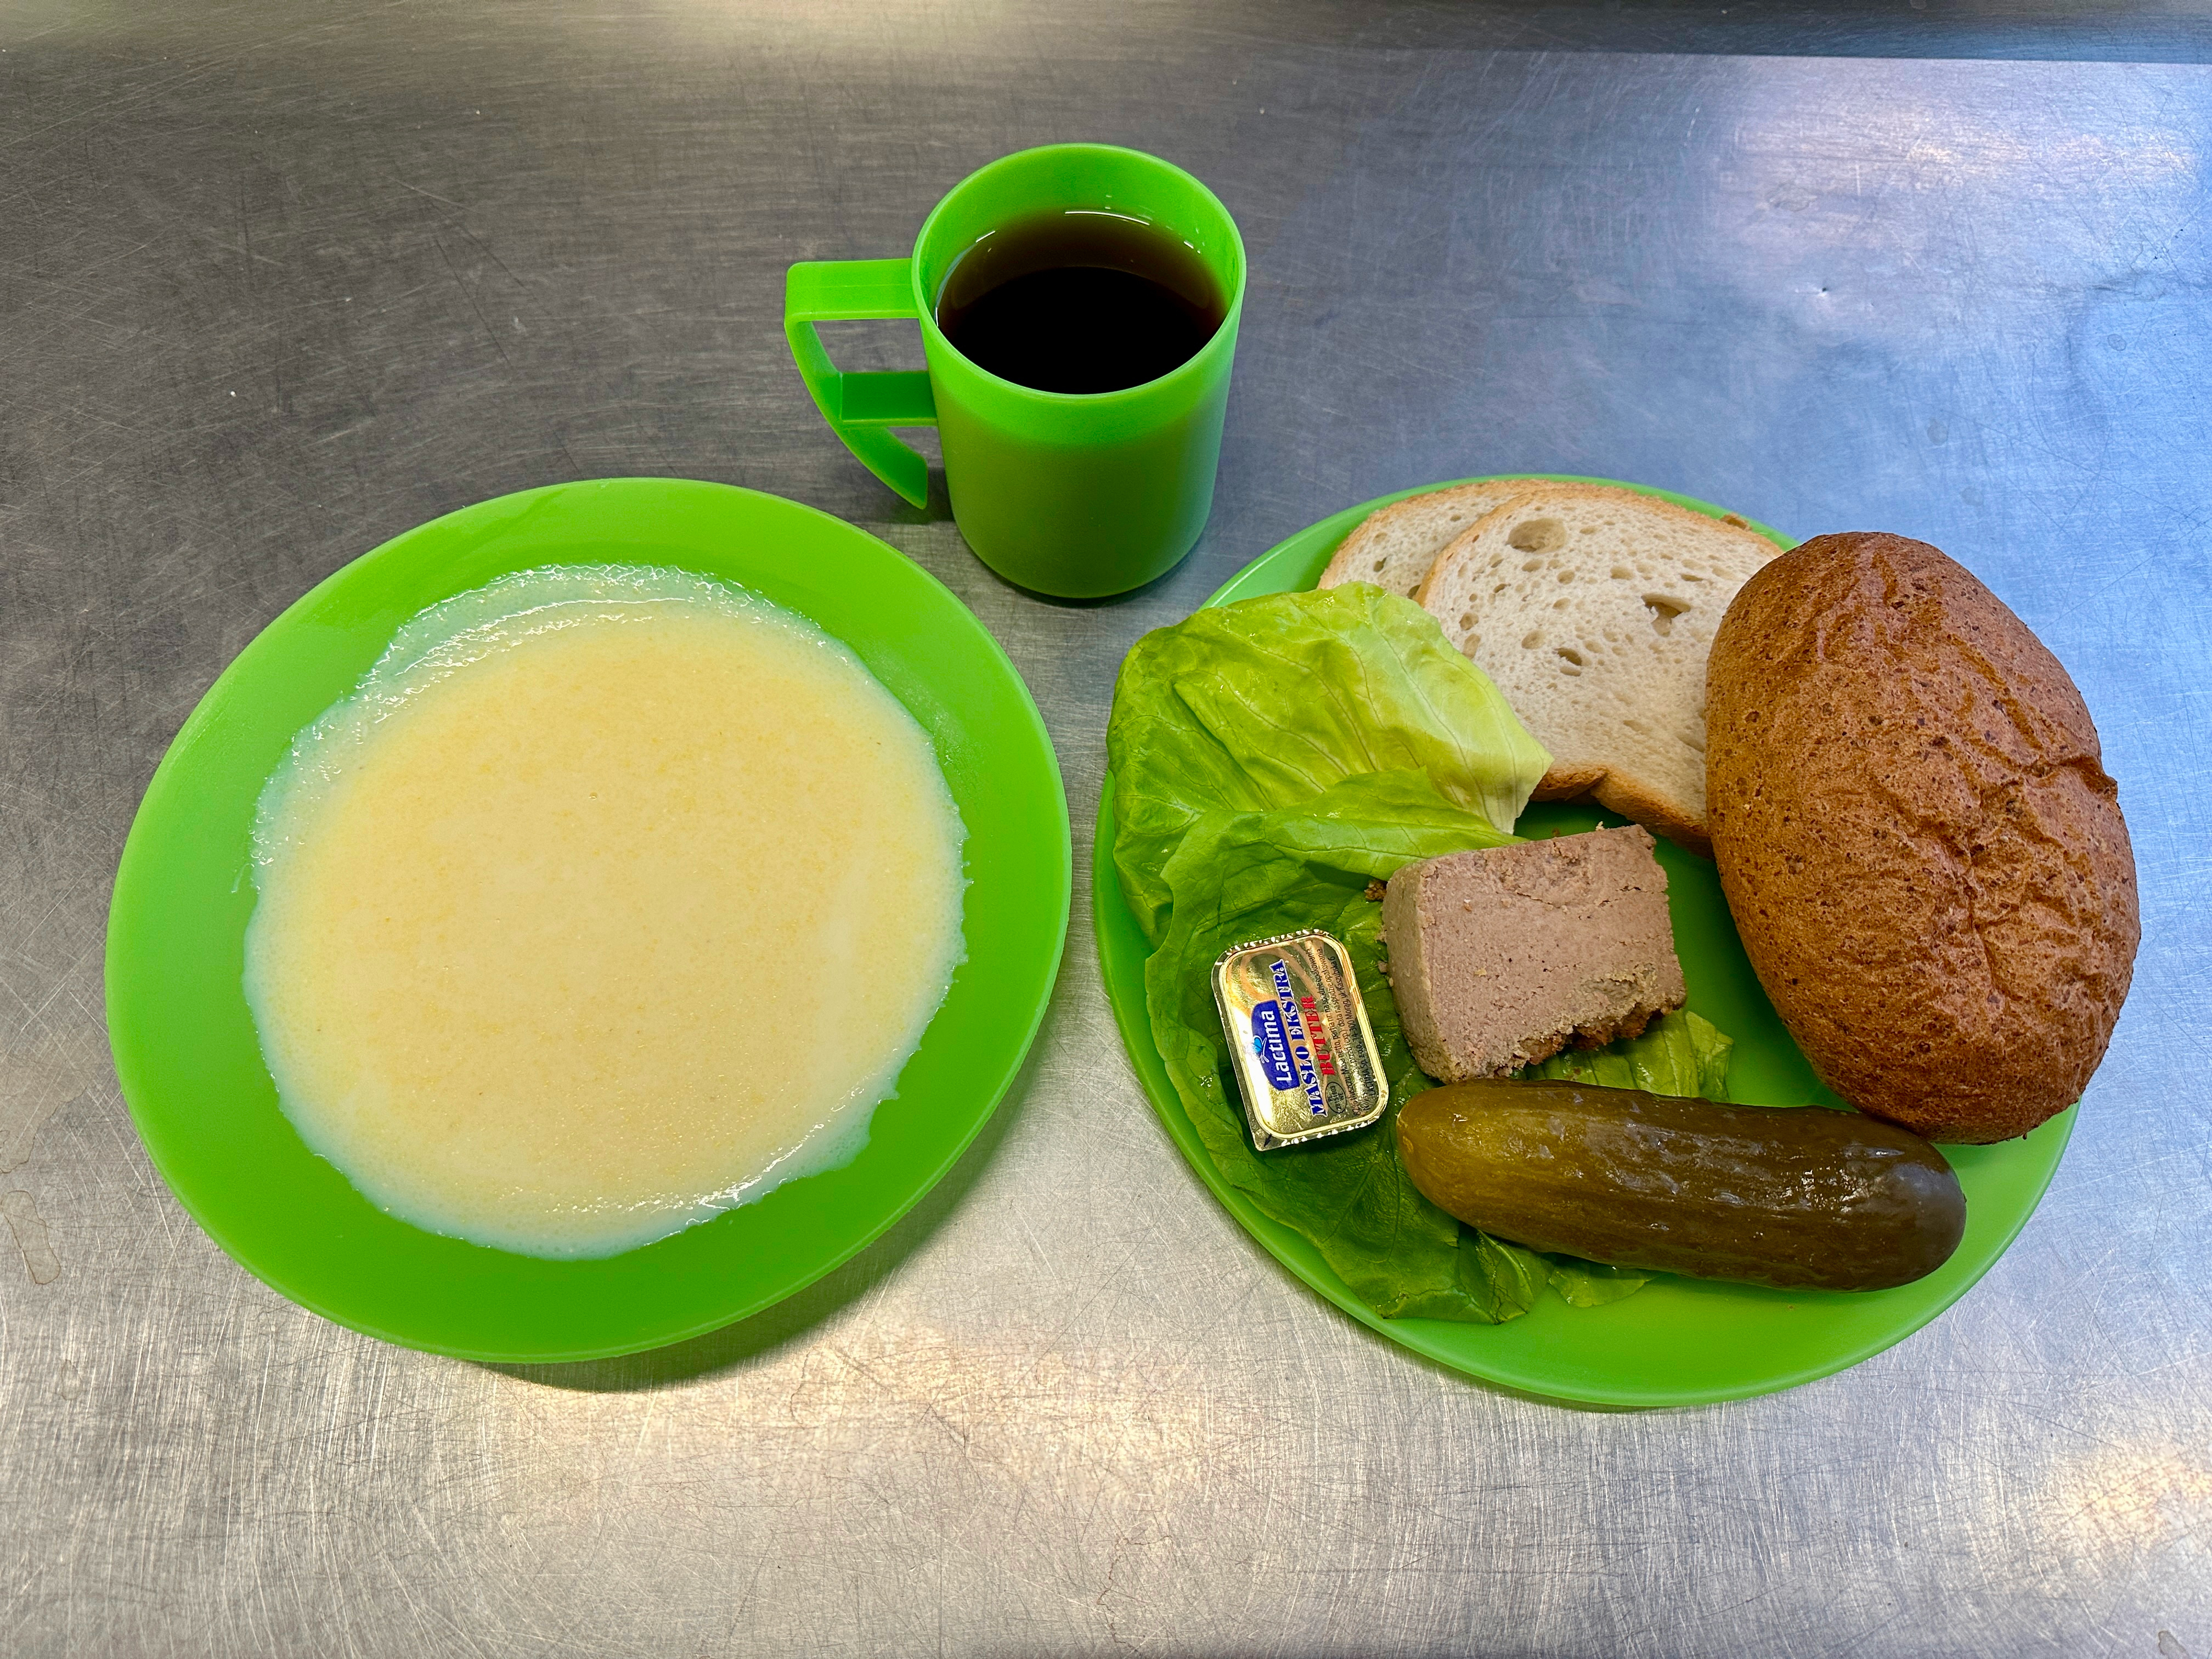 2 04 dobry posilek sniadanie - zupa mleczna, napój , bułka, ogórek, masło sałata, pasztet na zielonej zastawie